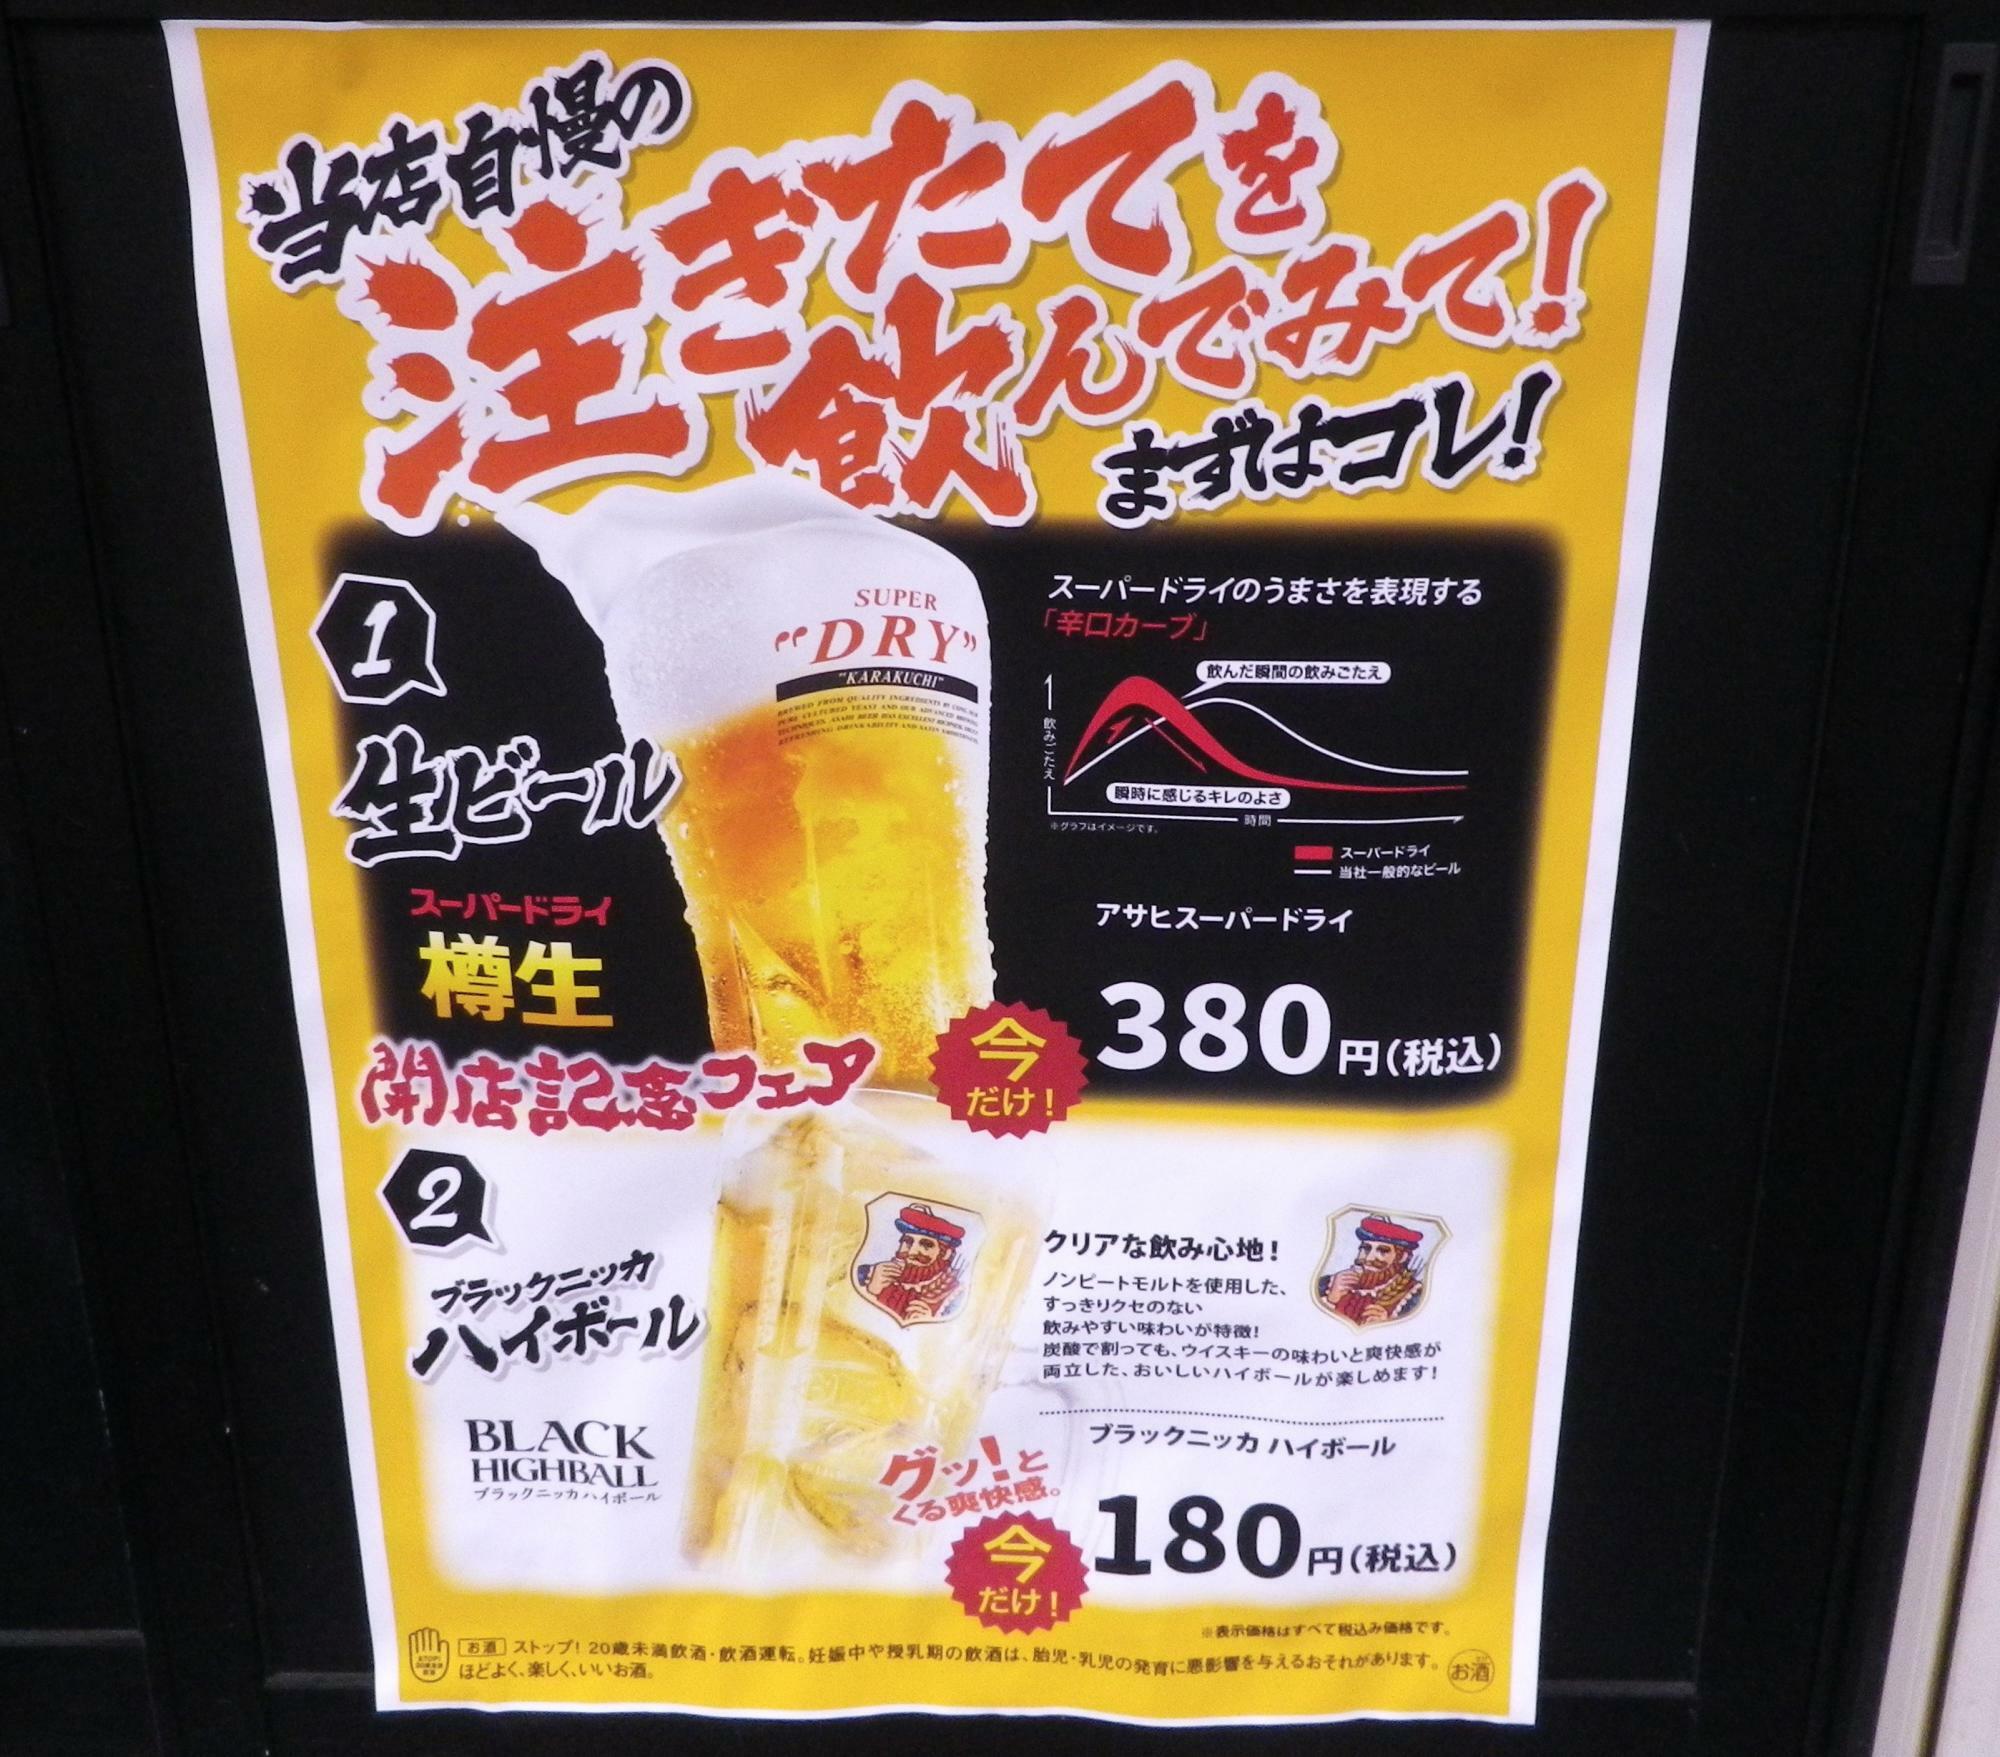 とても美味しそうな「注ぎたて」の生ビール等のポスター。